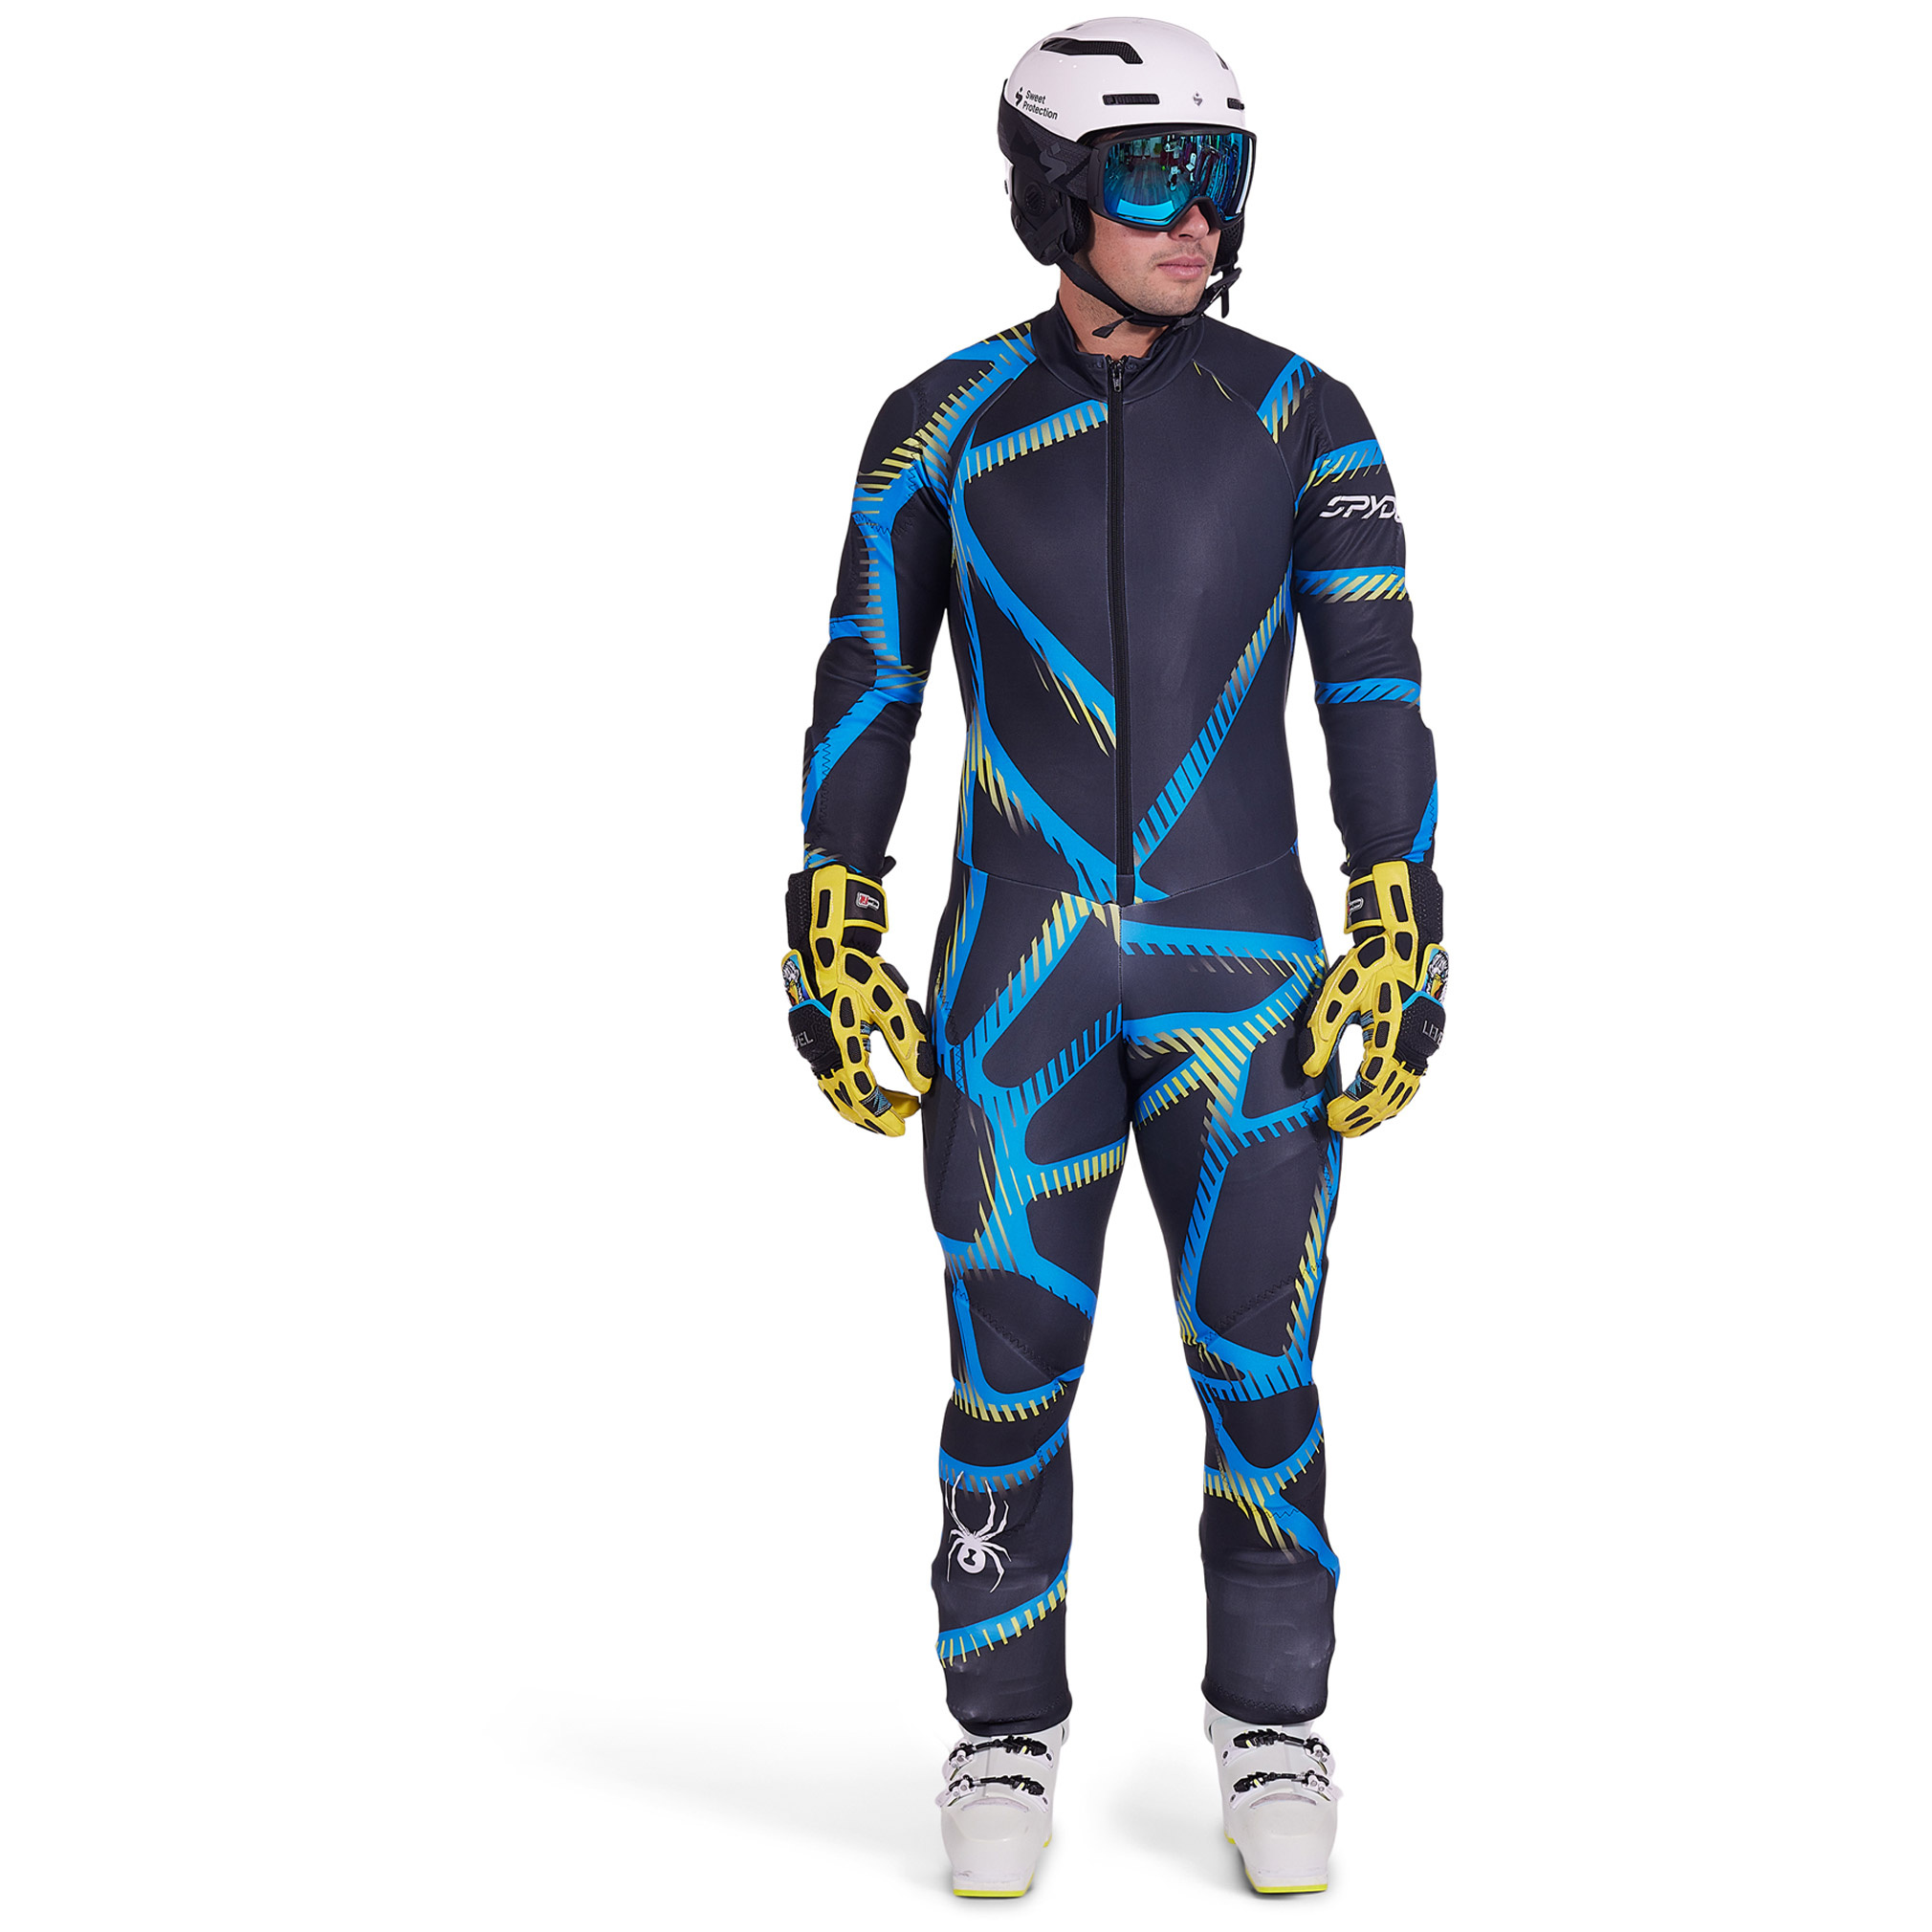 Spyder Performance GS Boys Race Suit - Ski Town